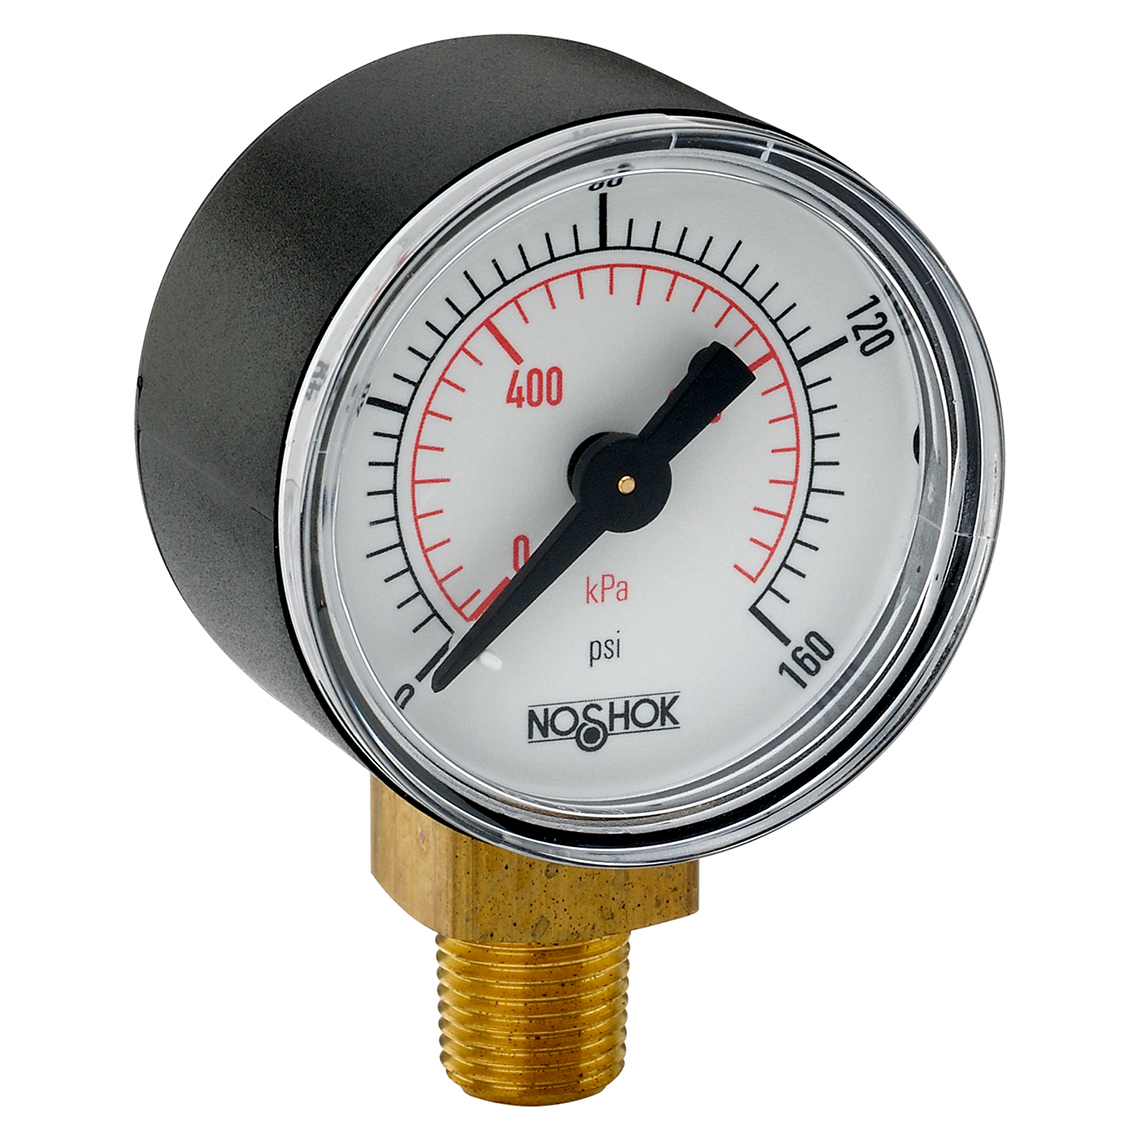 15-100-160-psi/kPa 100 Series ABS and Steel Case Dry Pressure Gauges